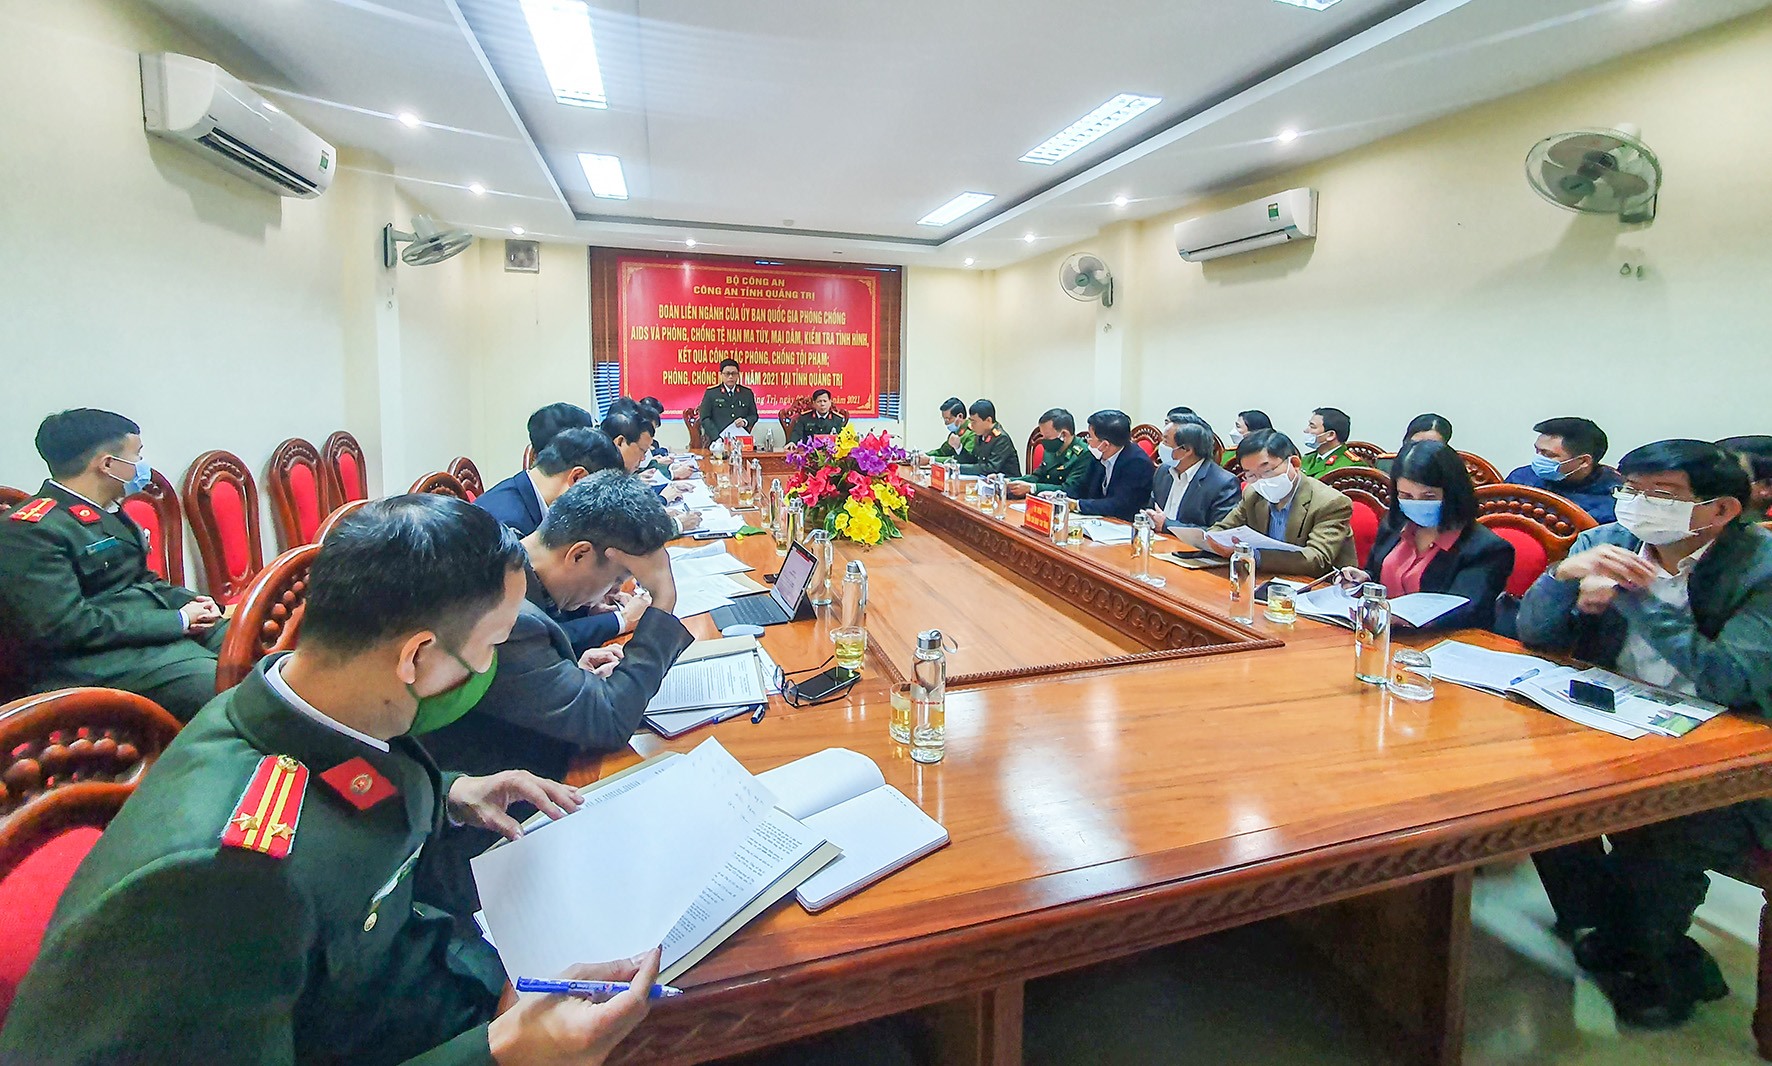 Đại tá Nguyễn Hồng Nguyên, Phó Chánh Văn phòng Bộ Công an phát biểu kết luận tại buổi kiểm tra-Ảnh: Anh Tuấn